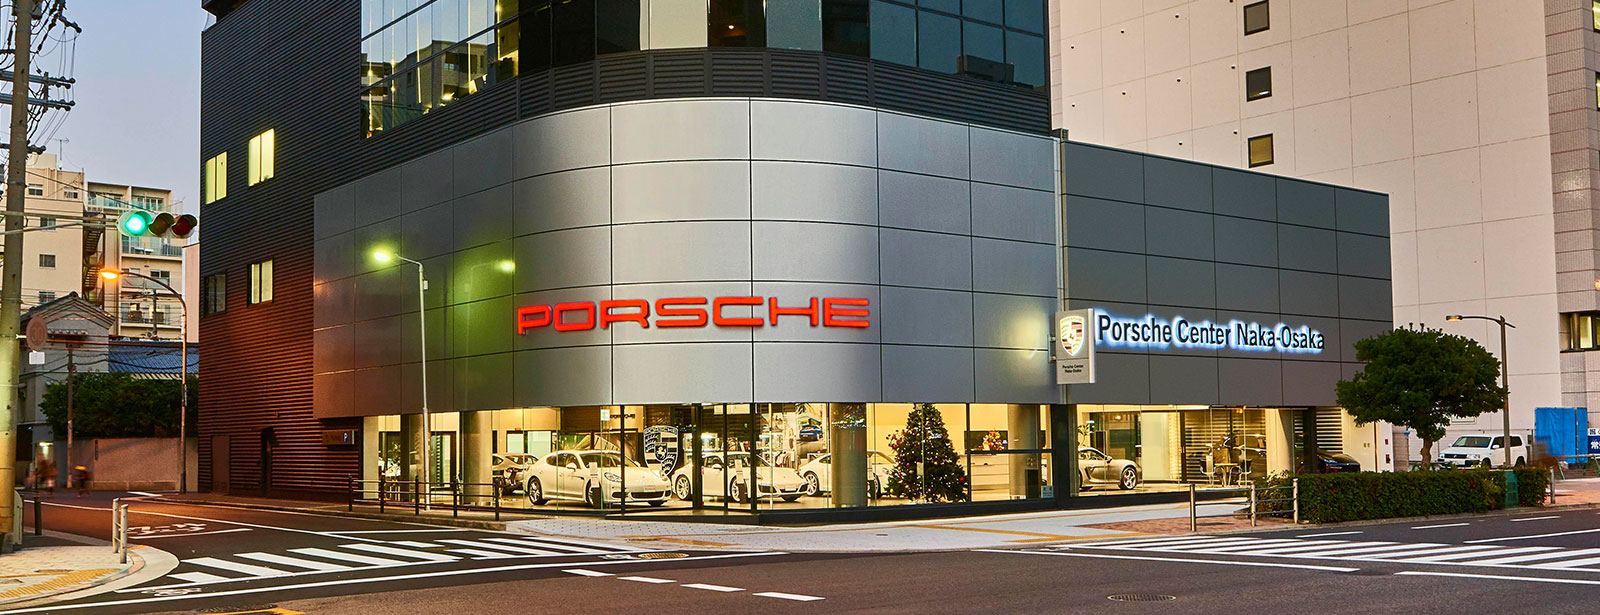 Porsche Center Naka Osaka.